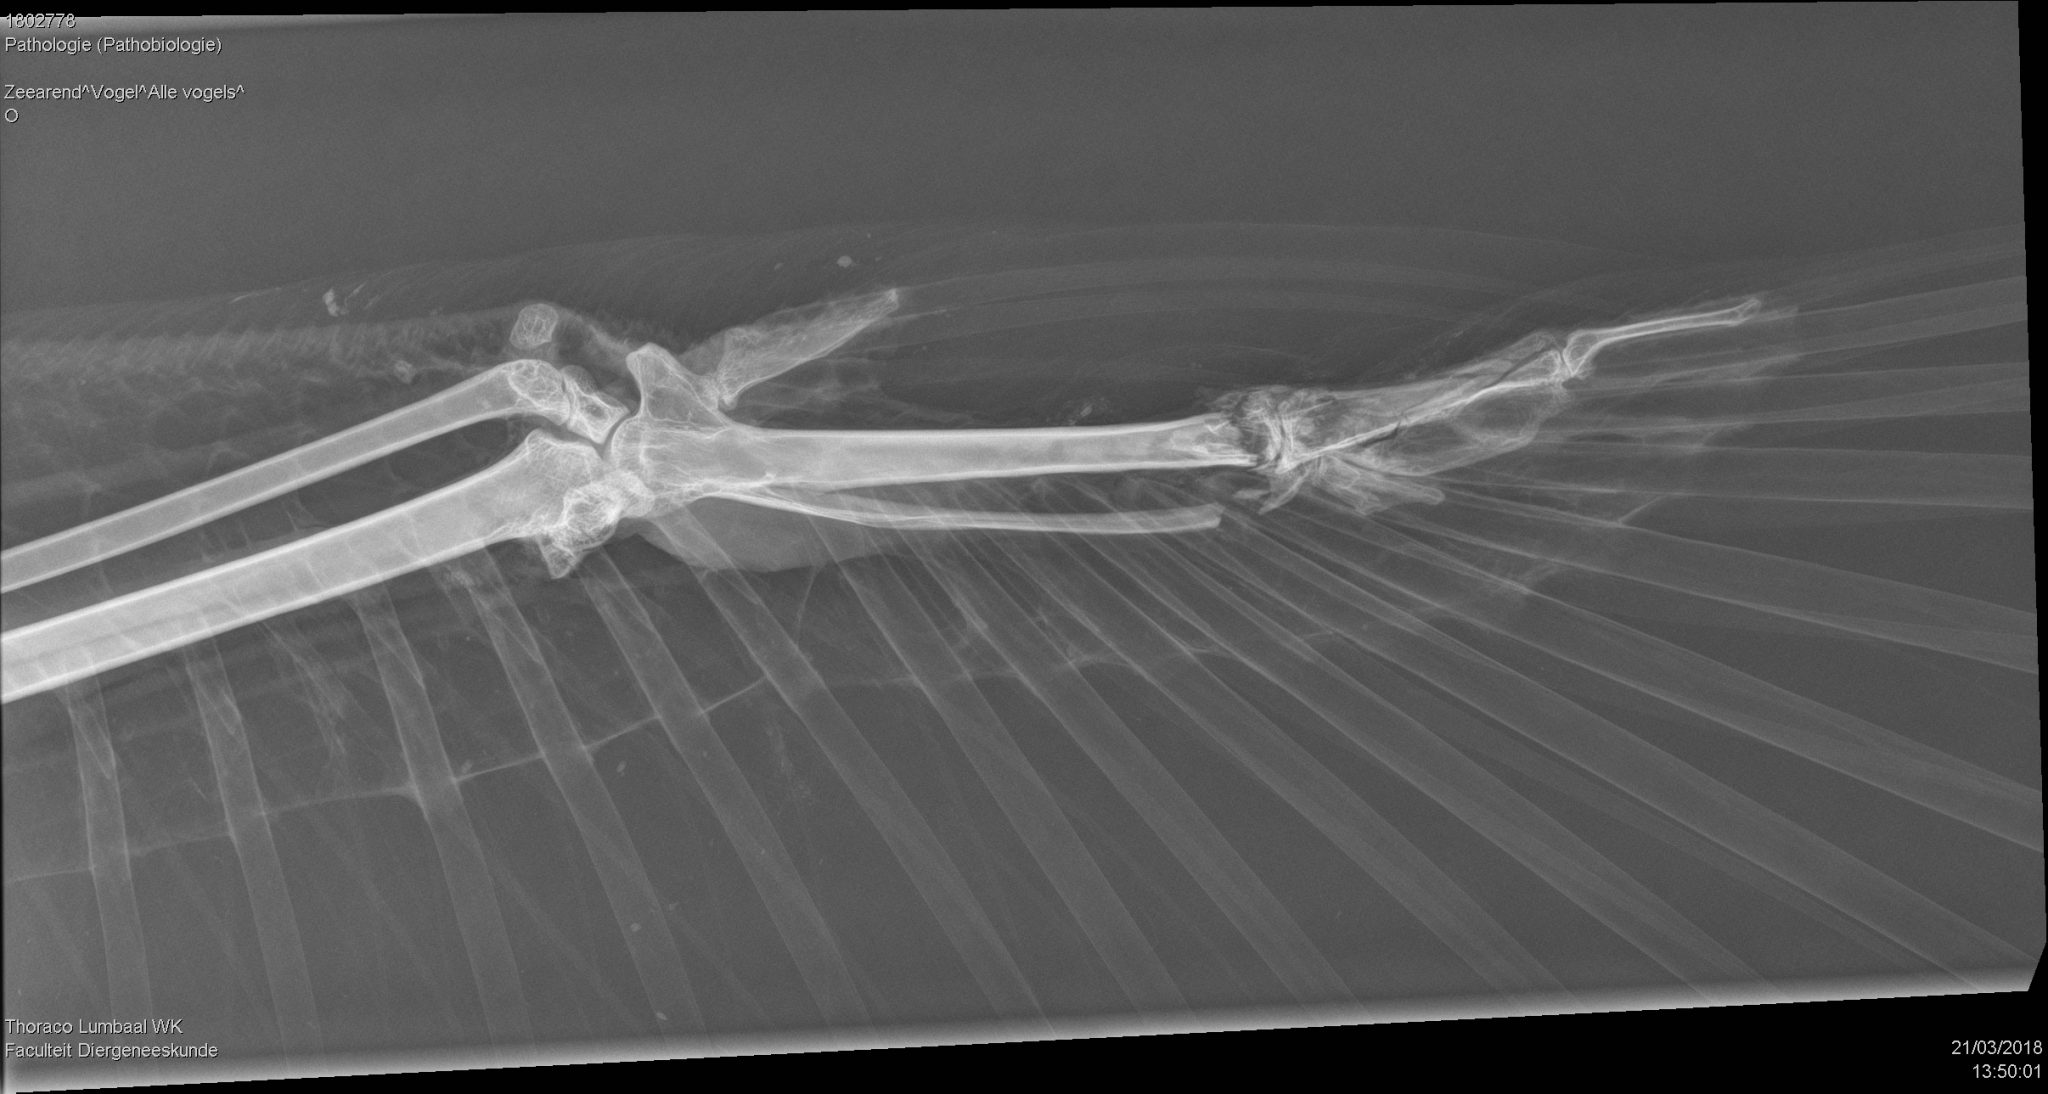 röntgenfoto linker vleugel zeearend